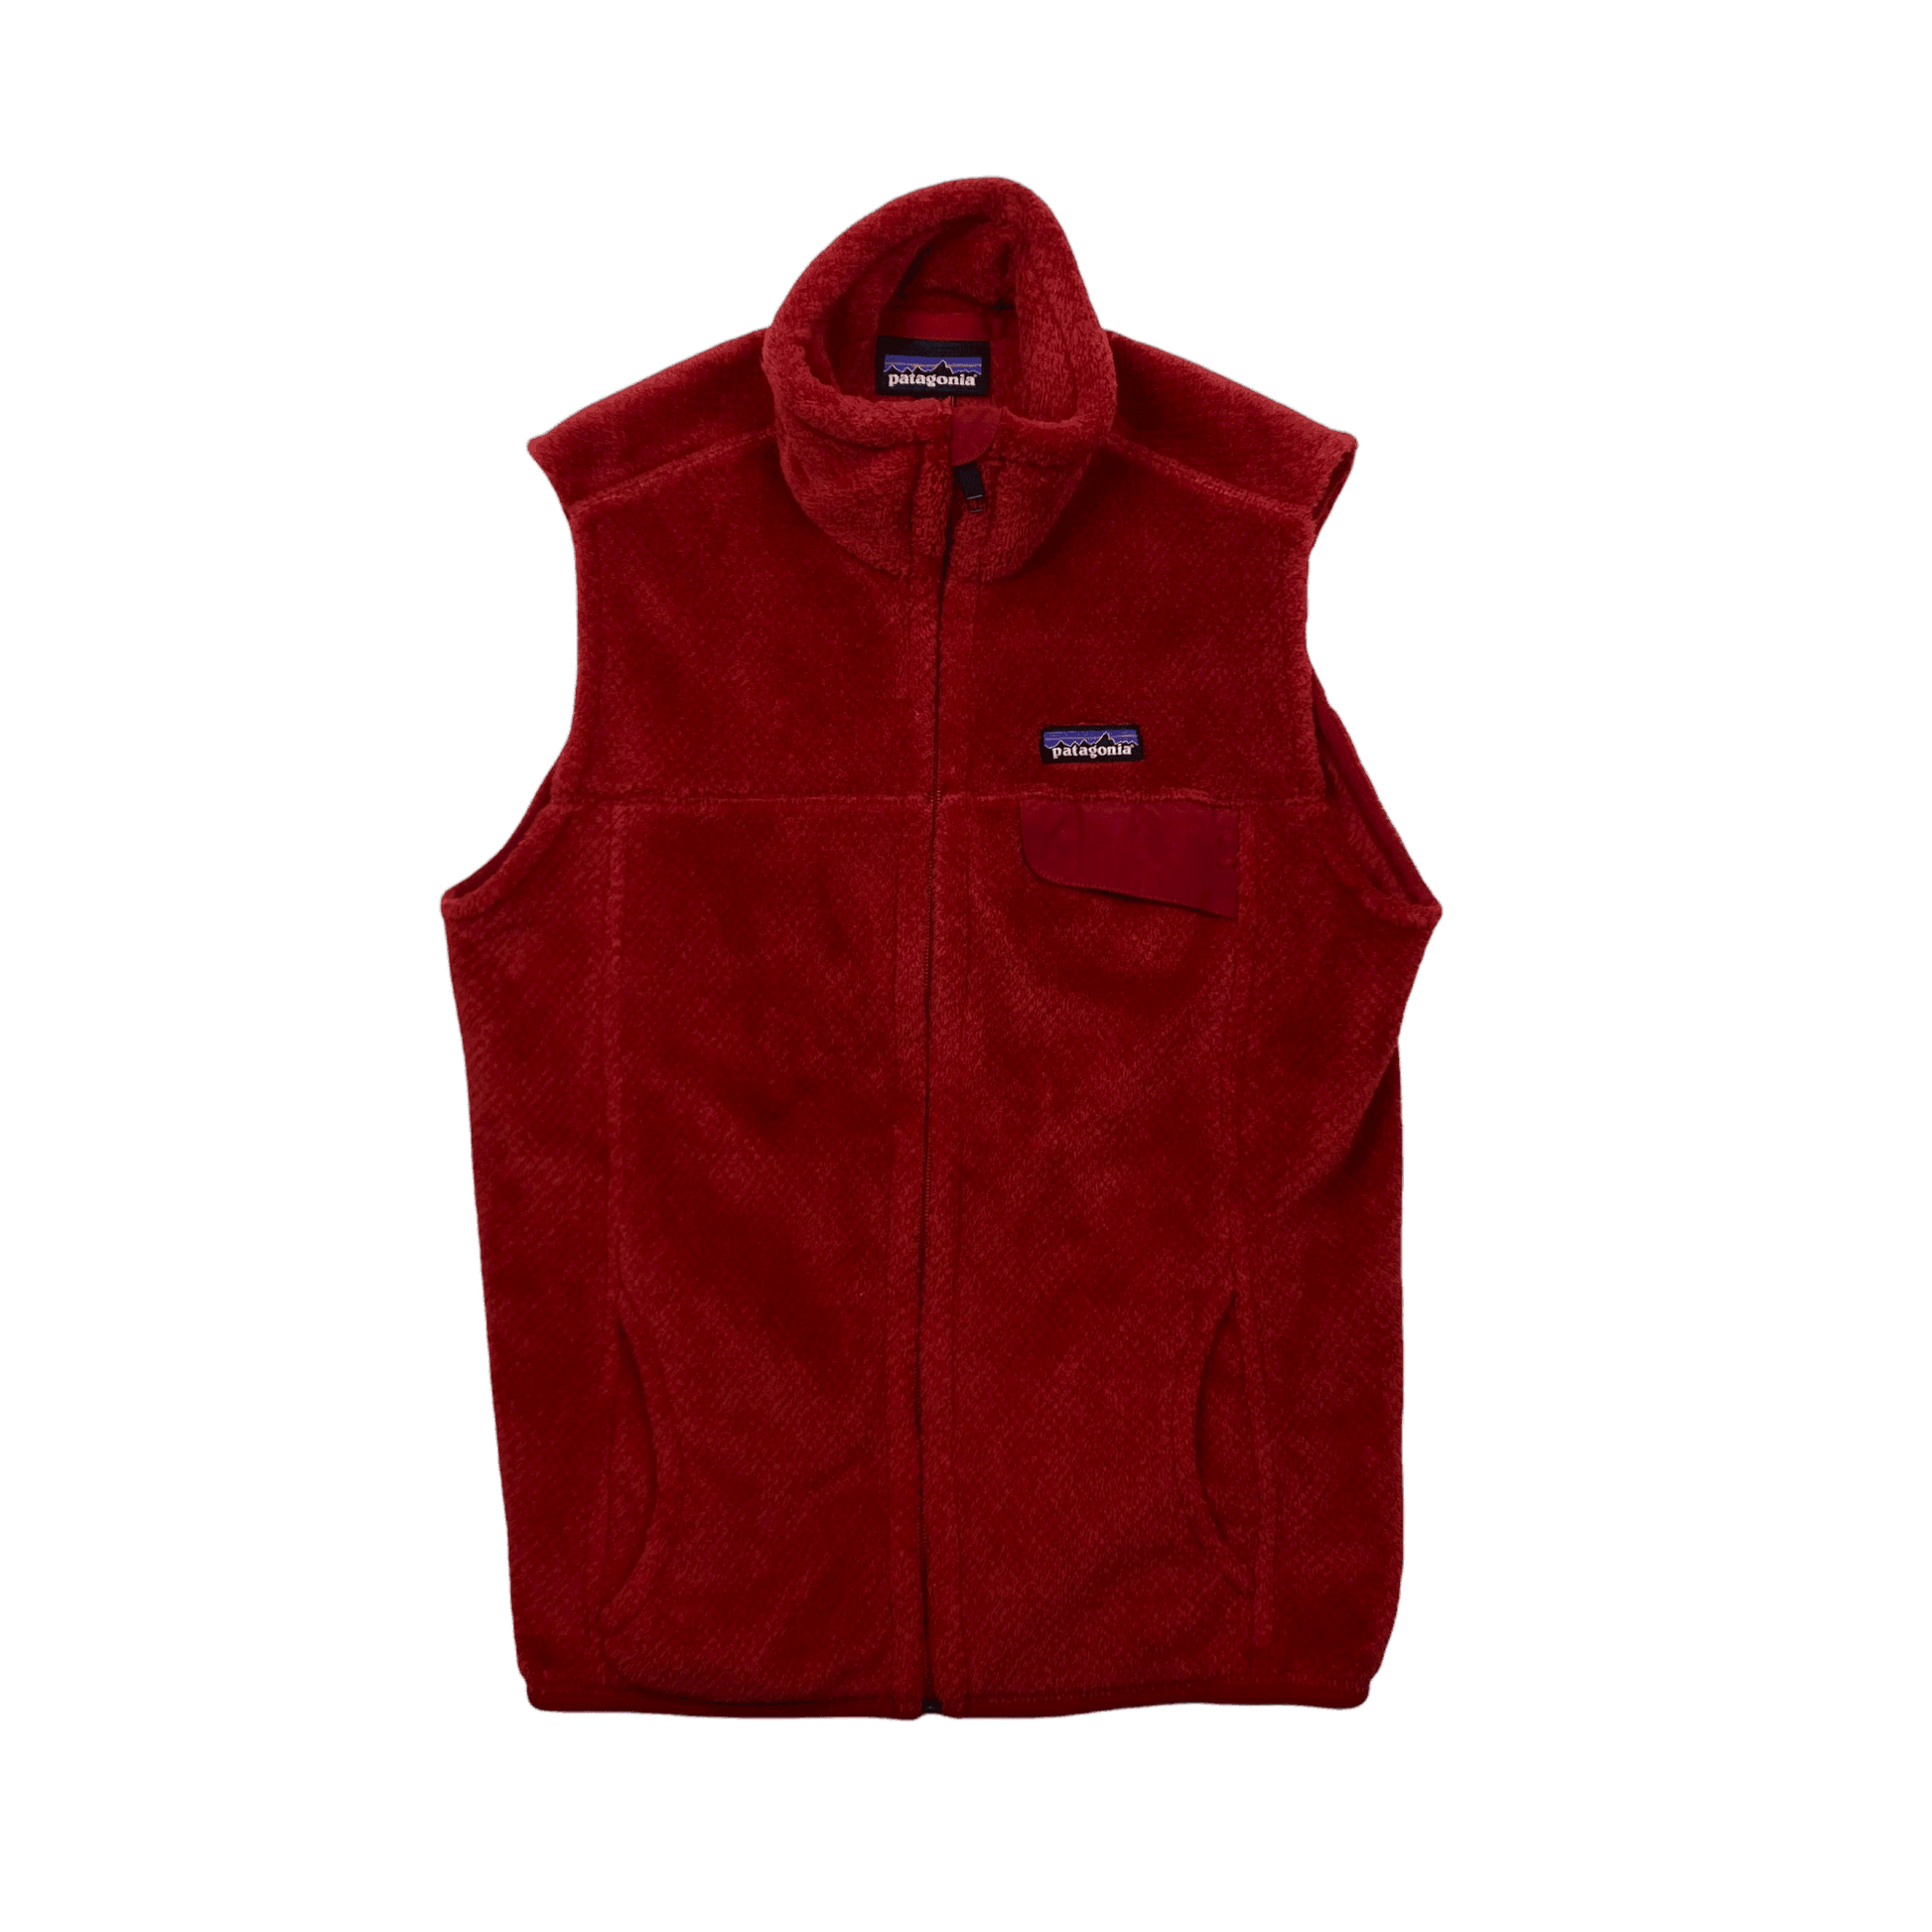 Vintage Woman's Red Patagonia Fleece Gilet - Medium - The Streetwear Studio